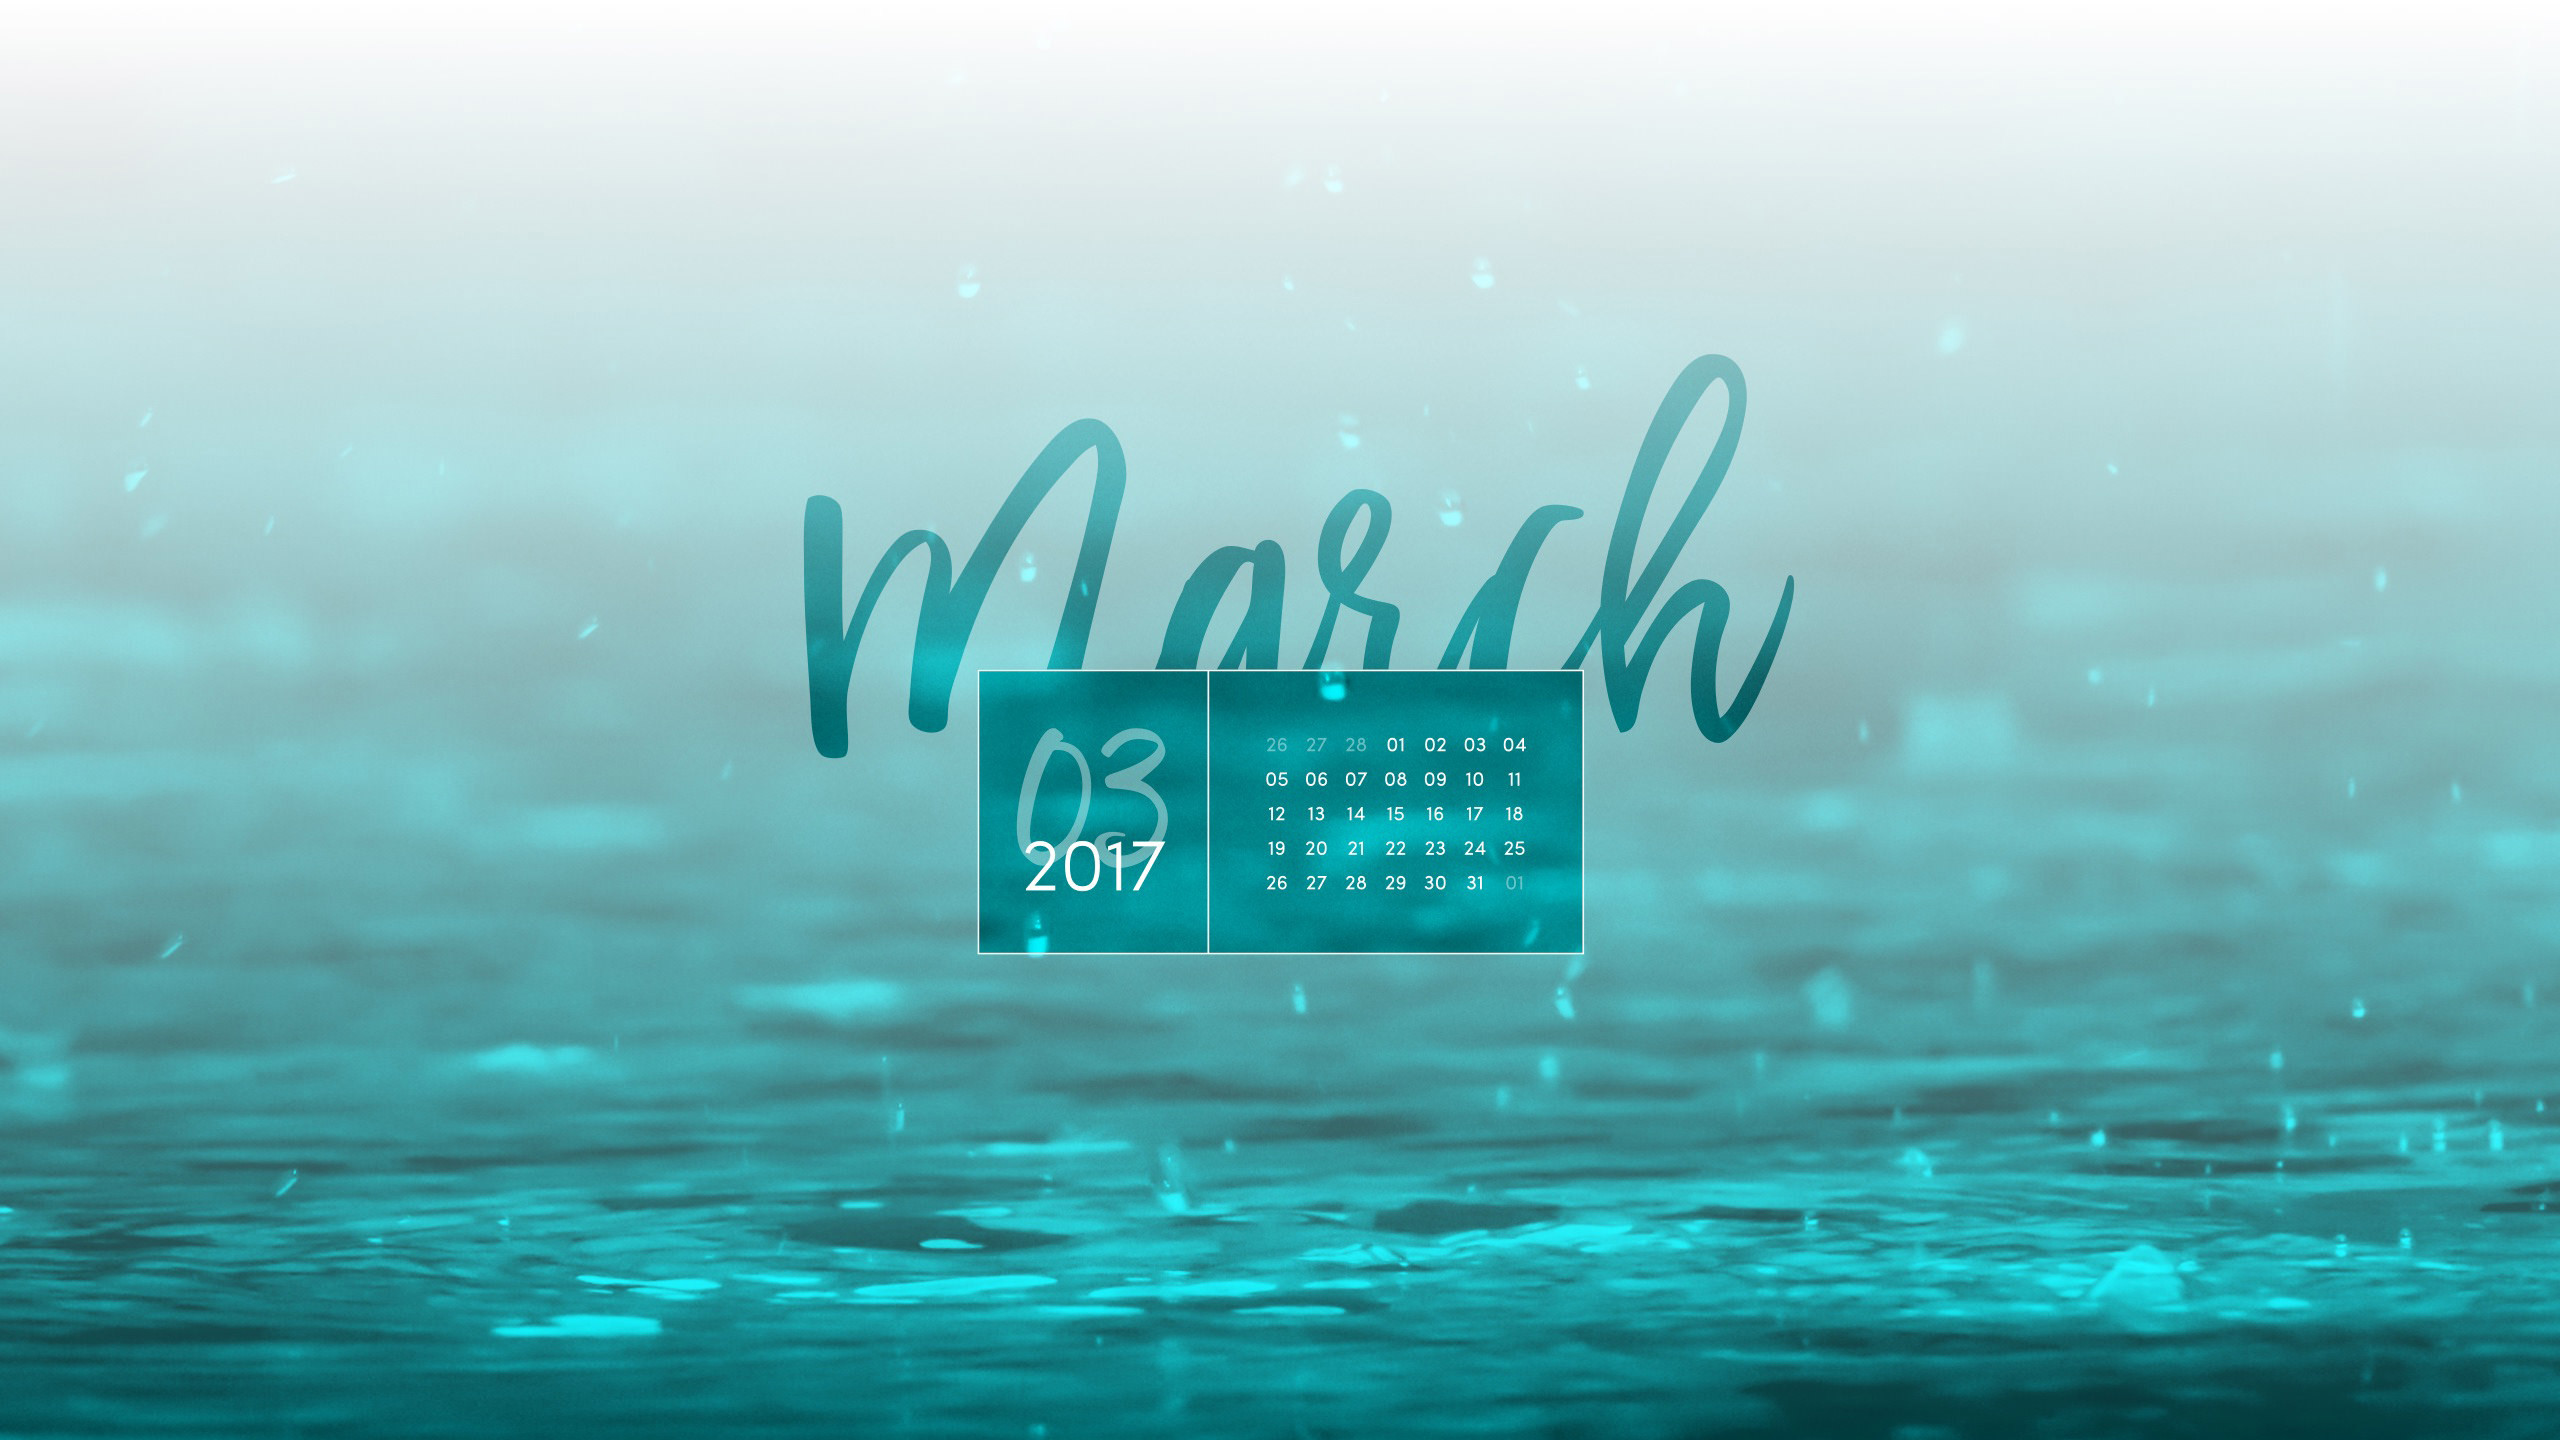 March 2017 Desktop Calendar Wallpaper